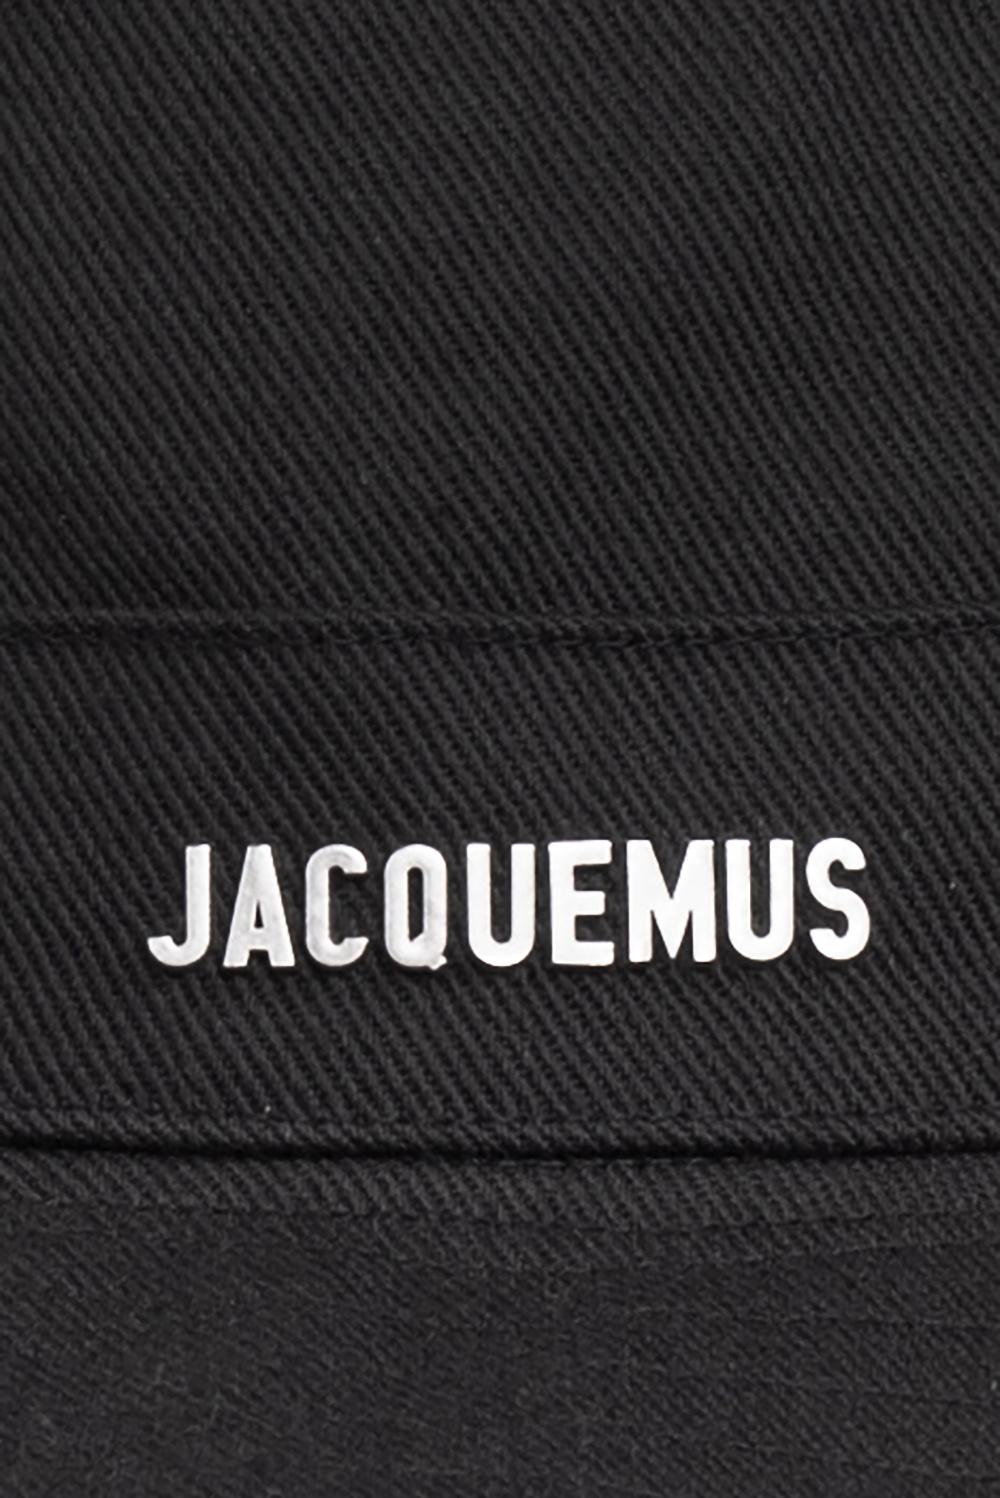 Jacquemus Artichaut Cotton Hat Men S Accessorie Vitkac